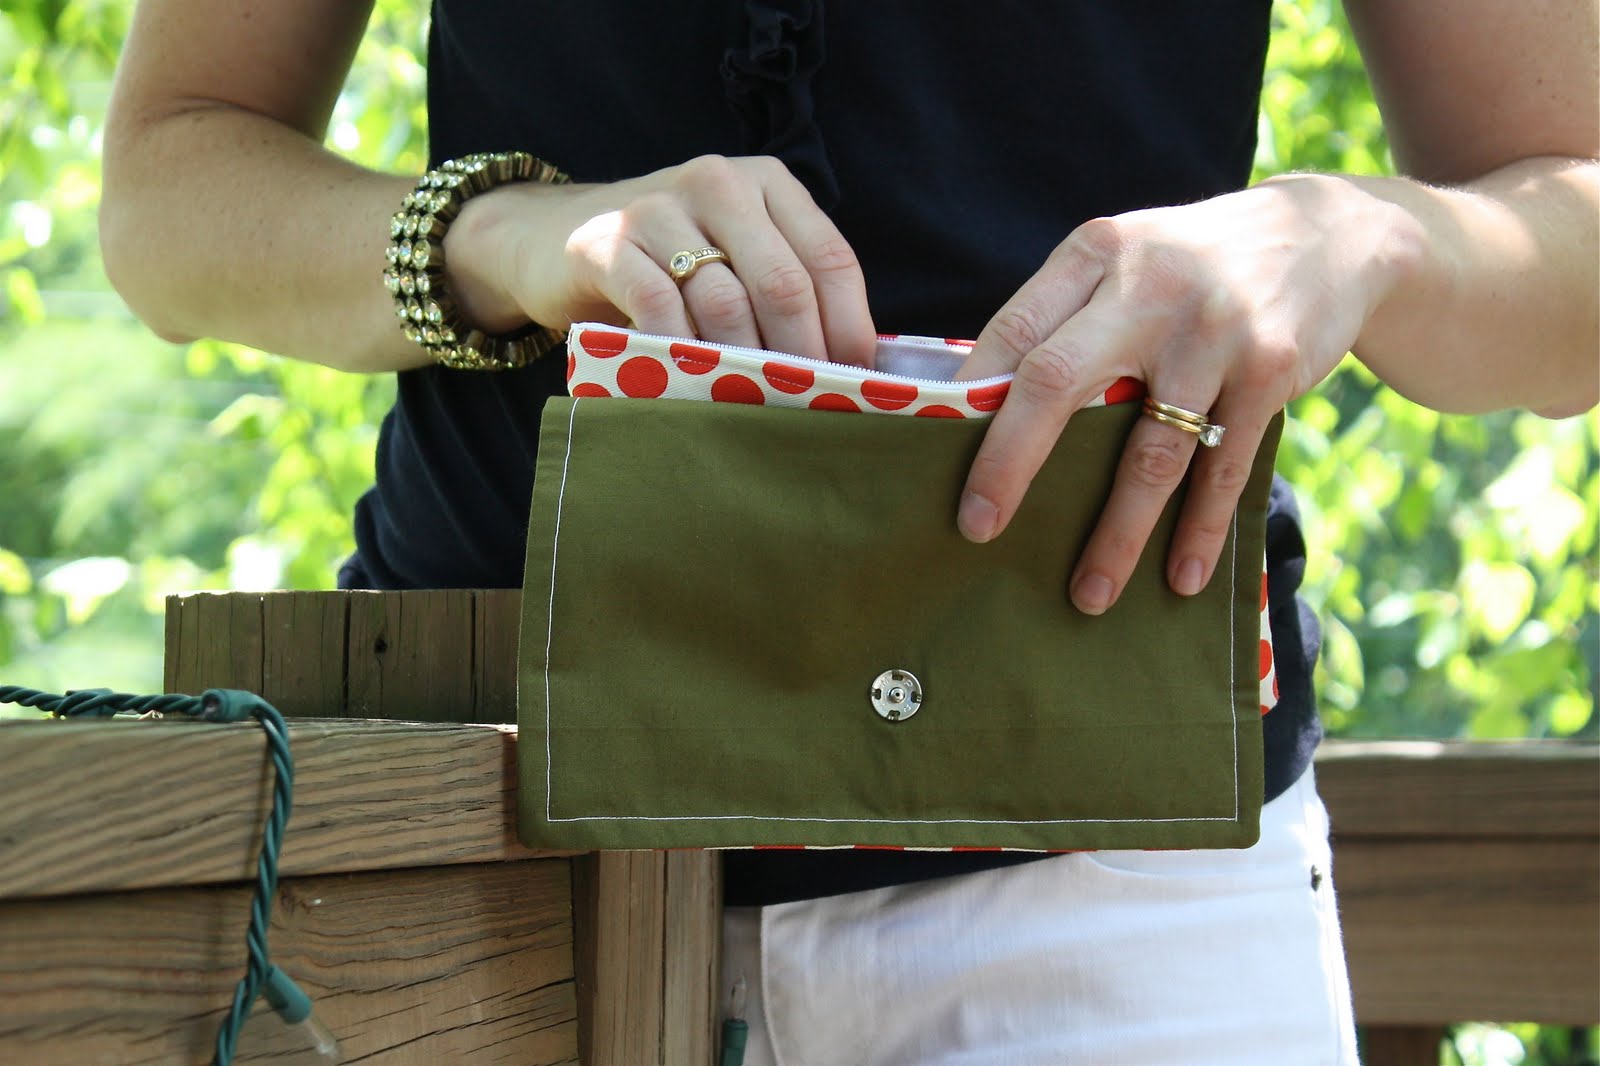 DIY Clutch Bag Free Sewing Pattern & Tutorial ~ DIY Tutorial Ideas!